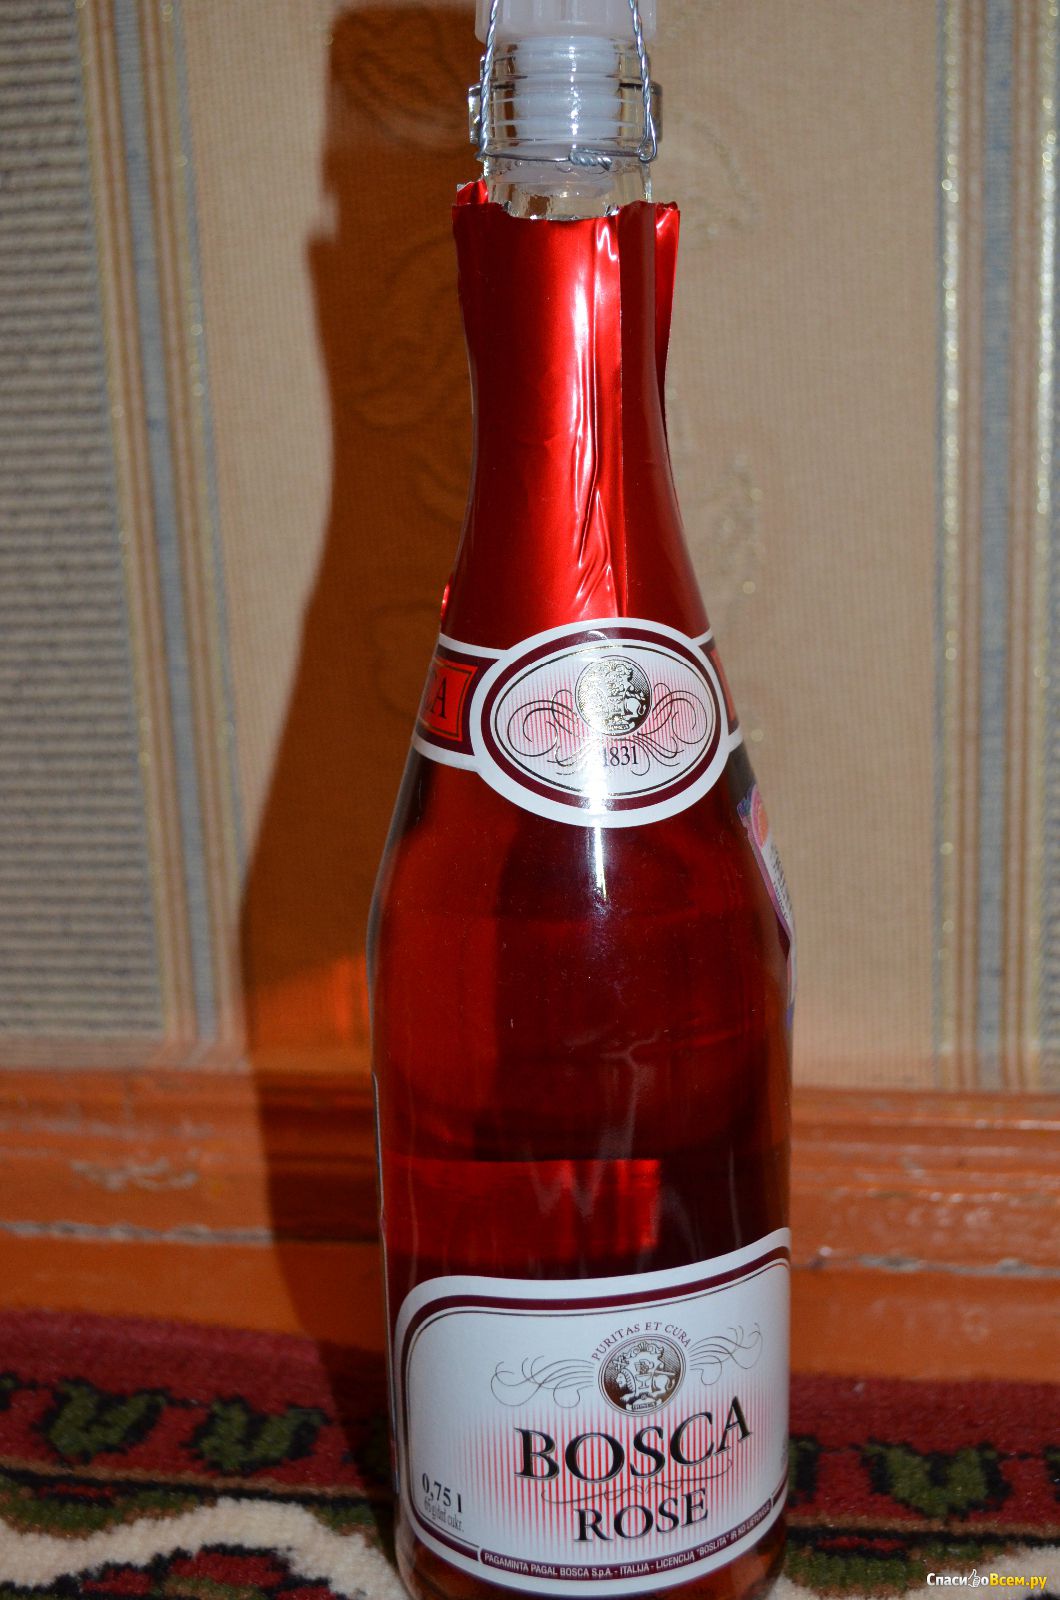 Боско сладкое. Винный напиток Bosca Боско. Винный напиток "Bosca" Rose. Винный напиток Bosca Rose 0.75. Розовое шампанское Bosca Rose.